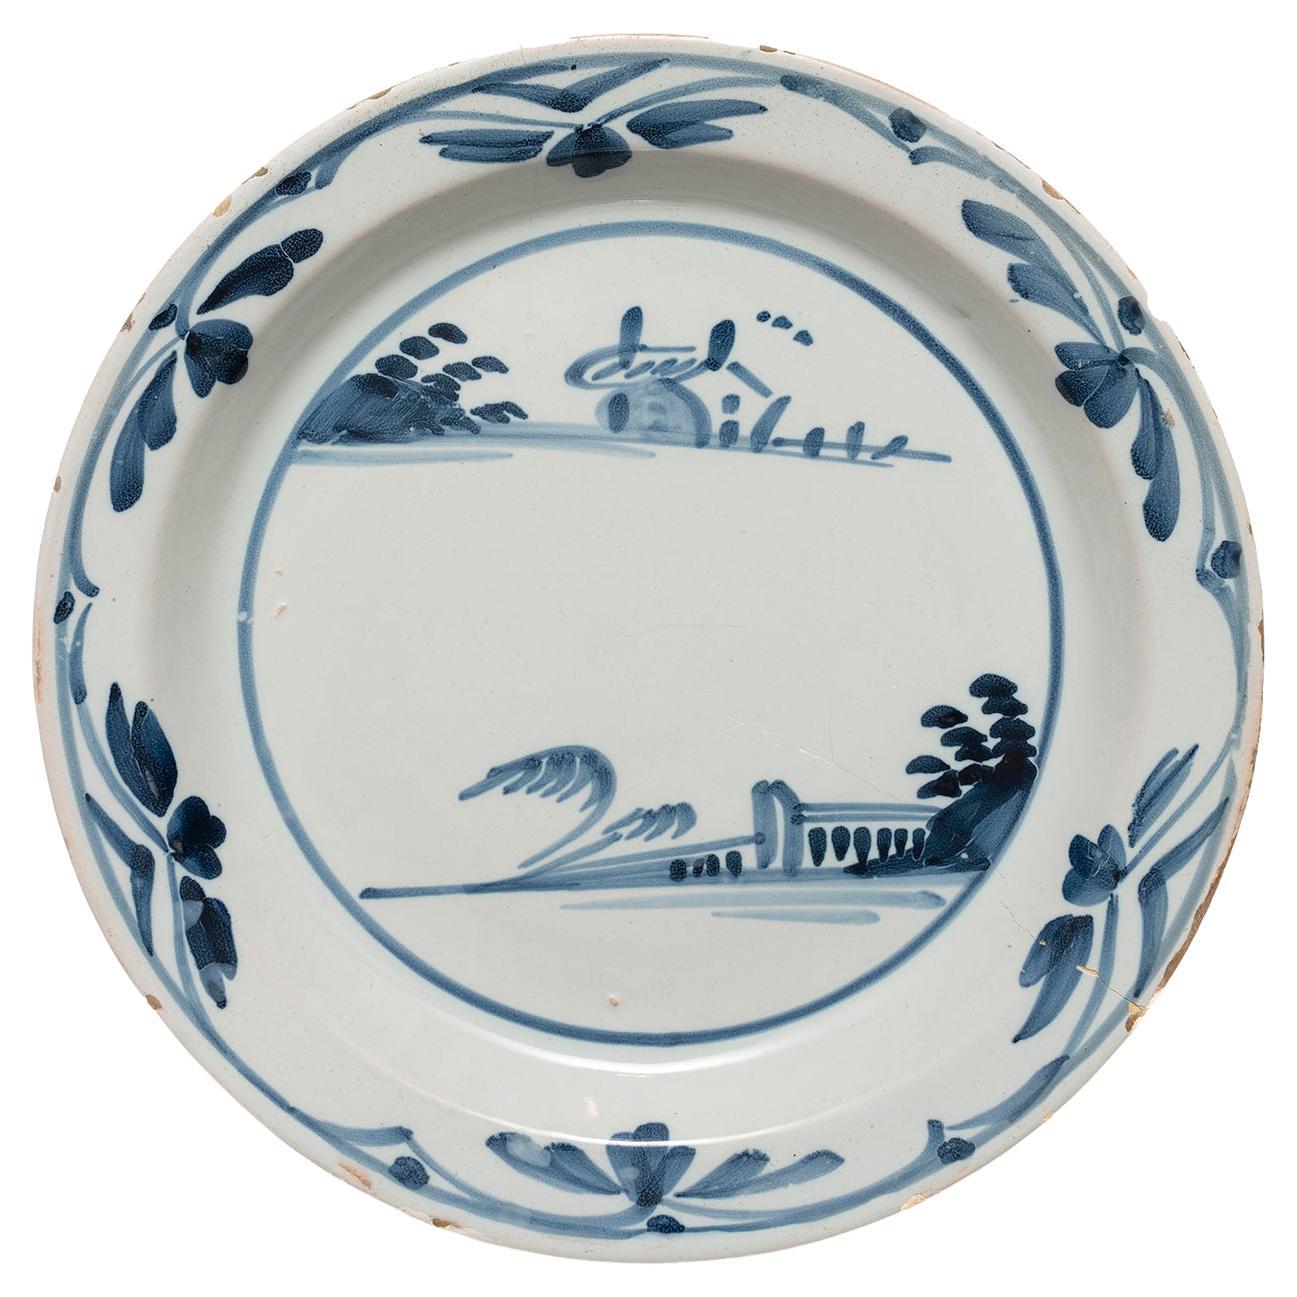 Plate delft London Chinoiserie Landschaft blau-weiße Keramik Durchmesser 22,5cm 9"